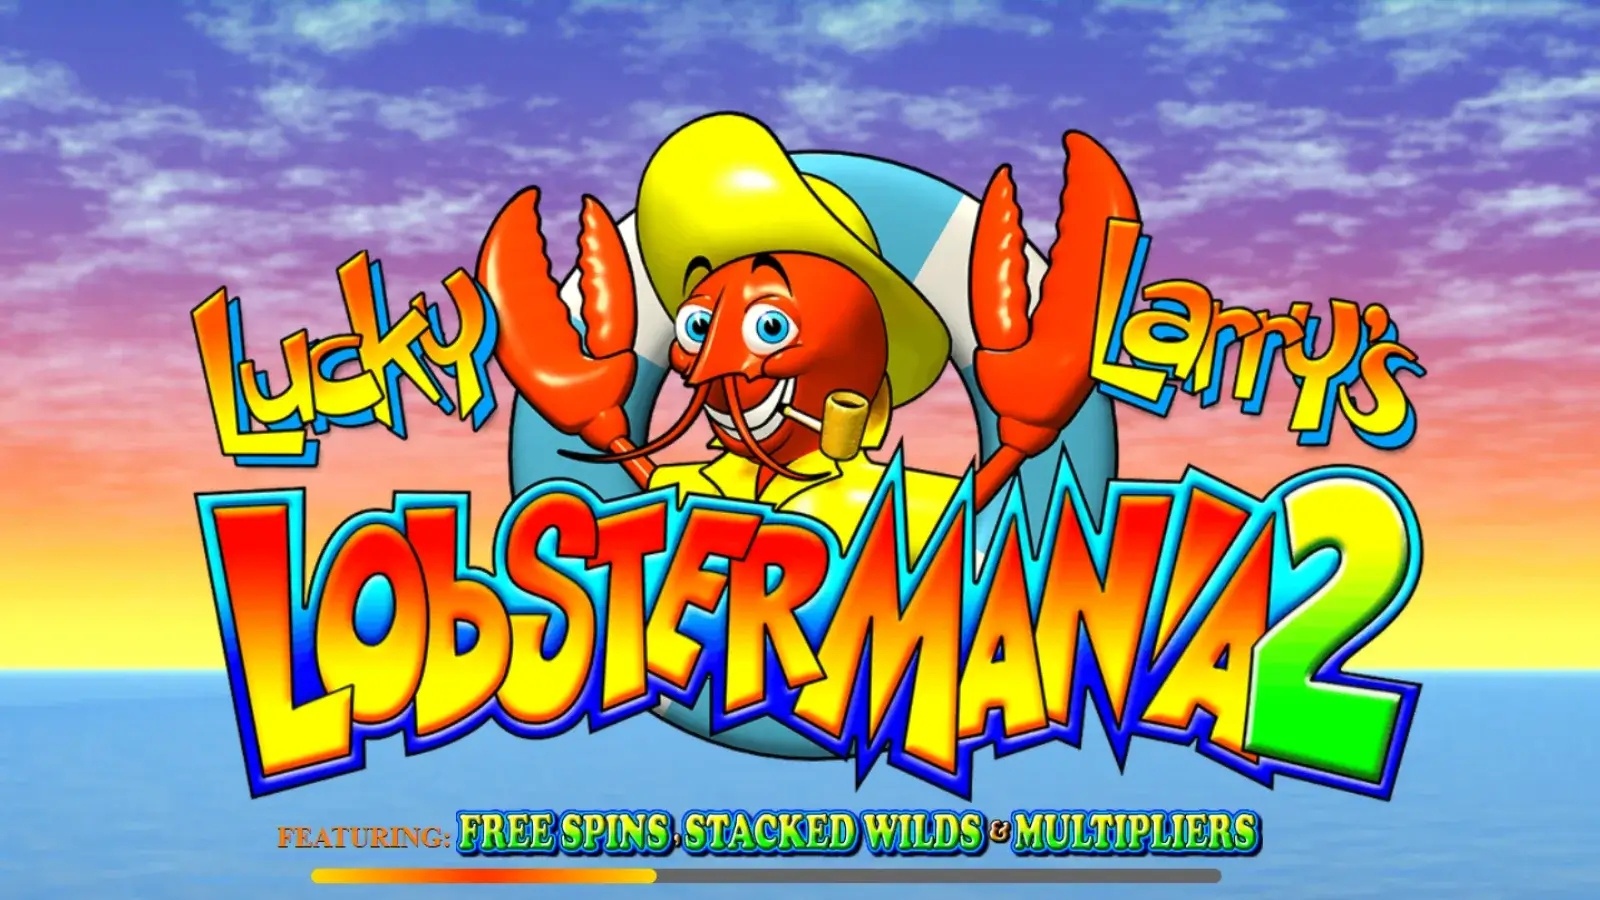 Lucky Larry's Lobstermania 2 – Slot nổi tiếng của nhà ITG